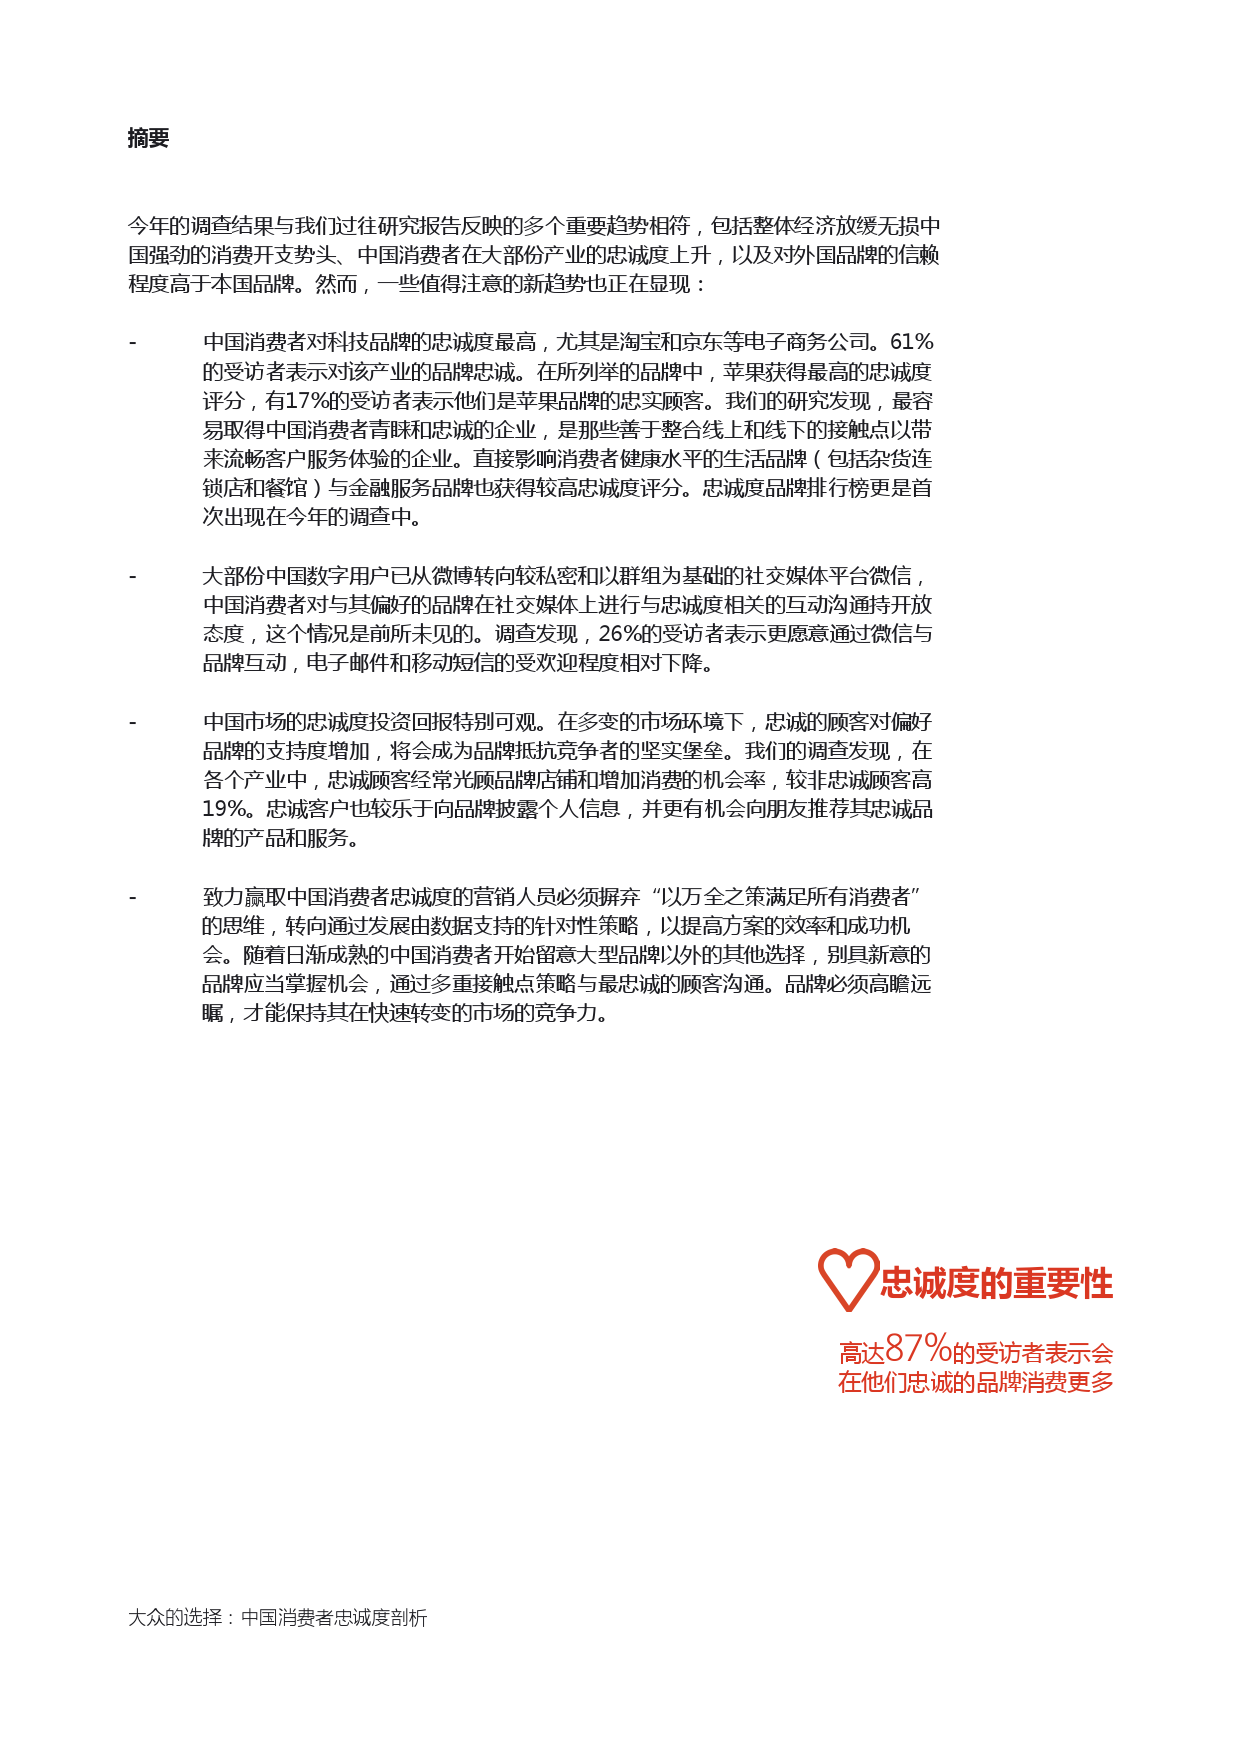 Epsilon_China_Loyalty_Study_report_CN_000003